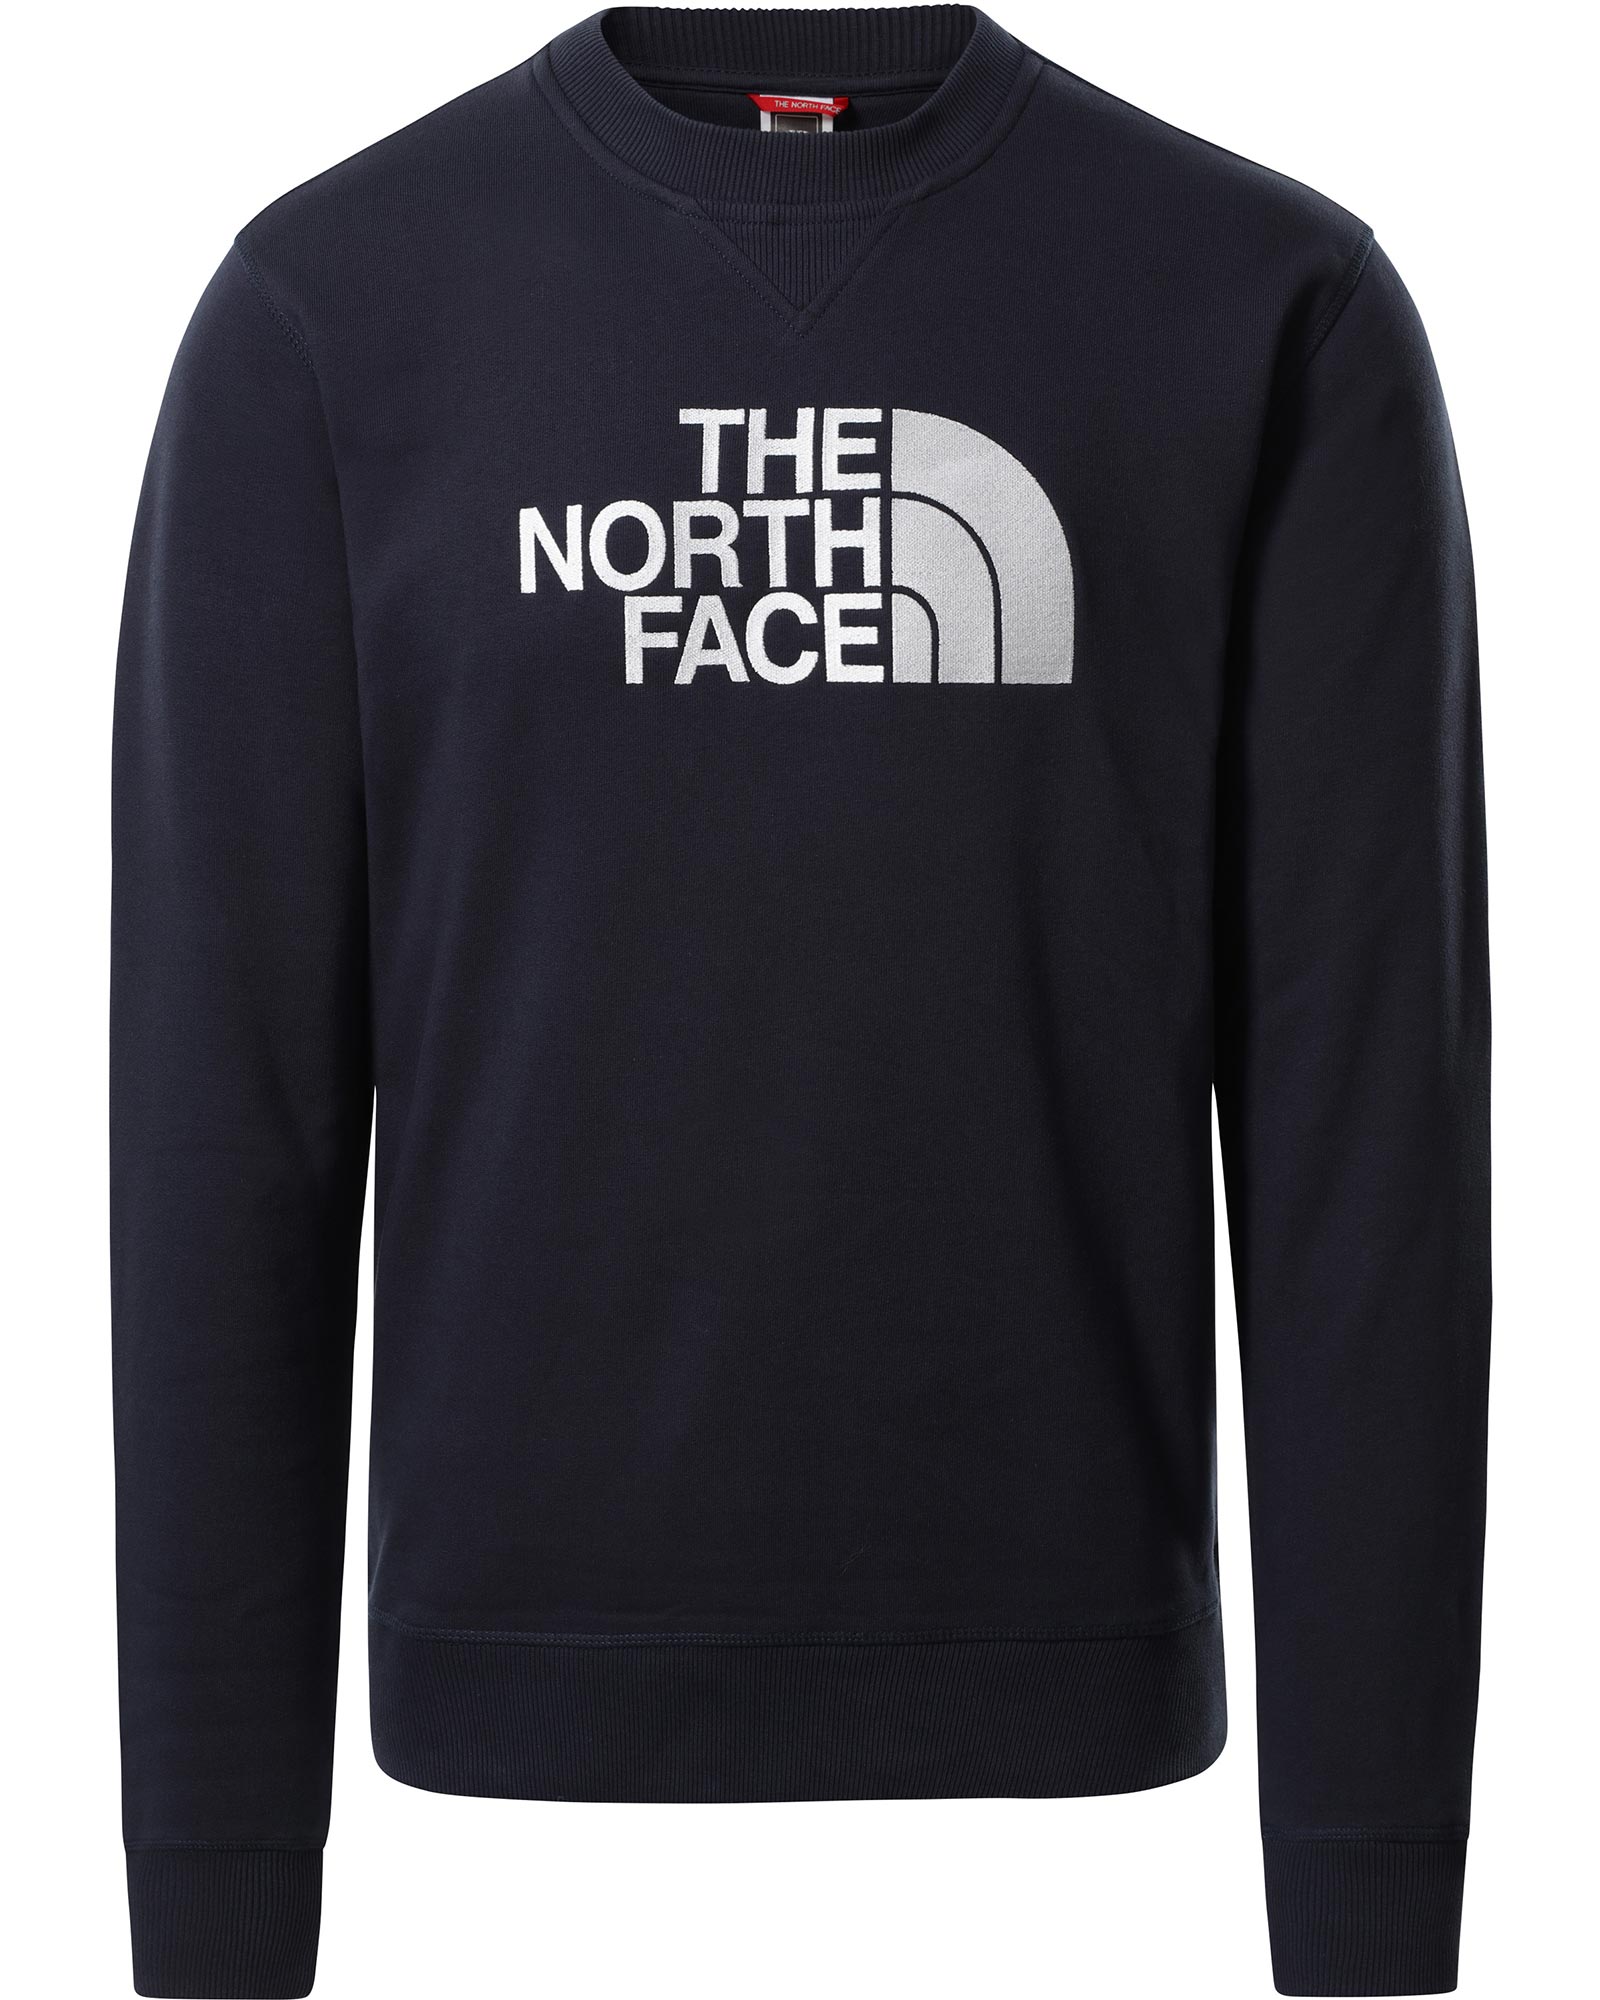 Product image of The North Face Drew Peak Men's Crew